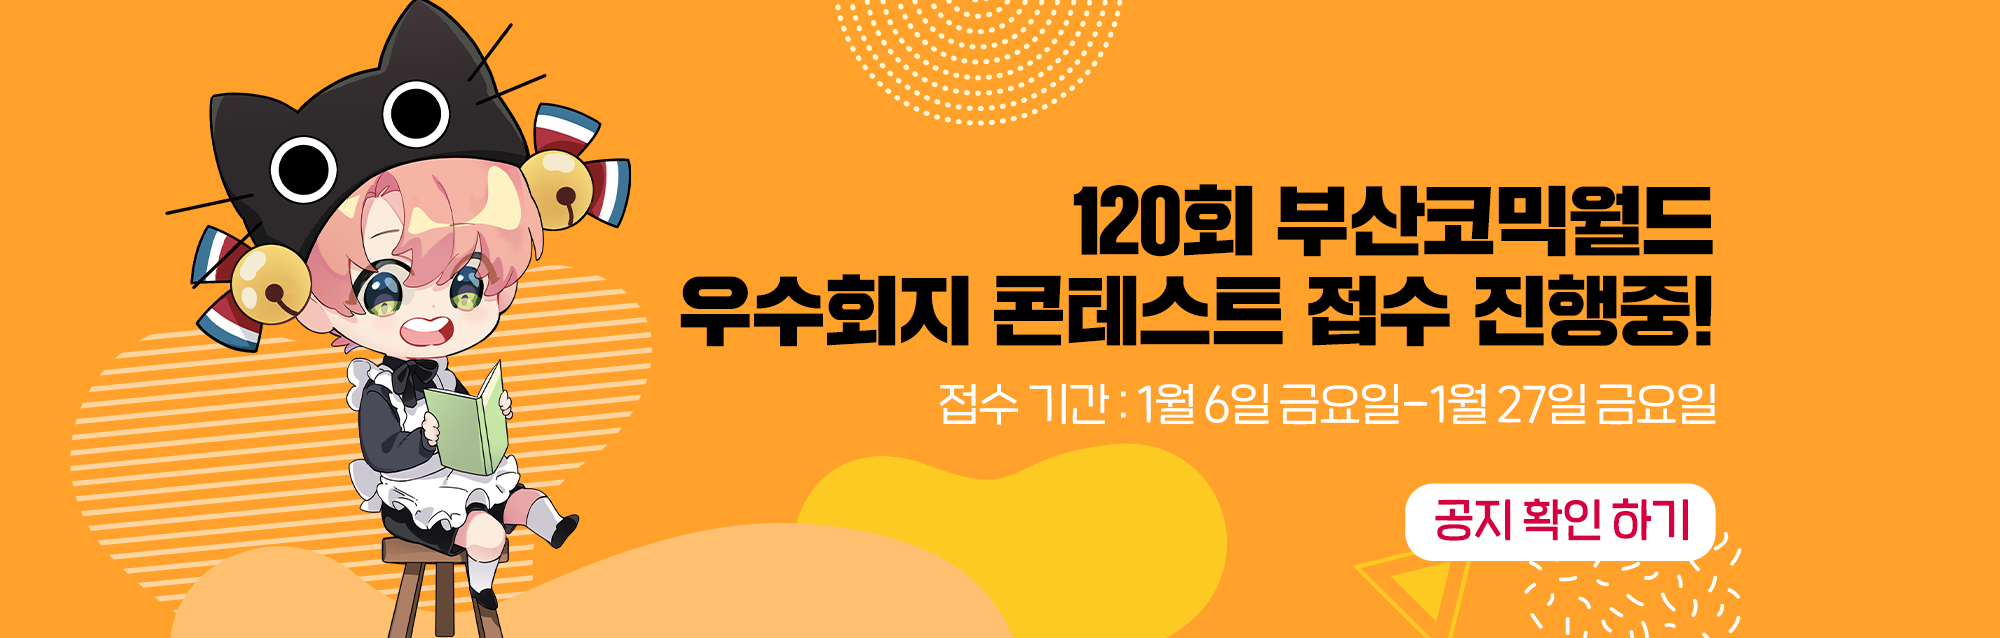 120회 부산코믹월드 동아리 우수회지 접수 안내